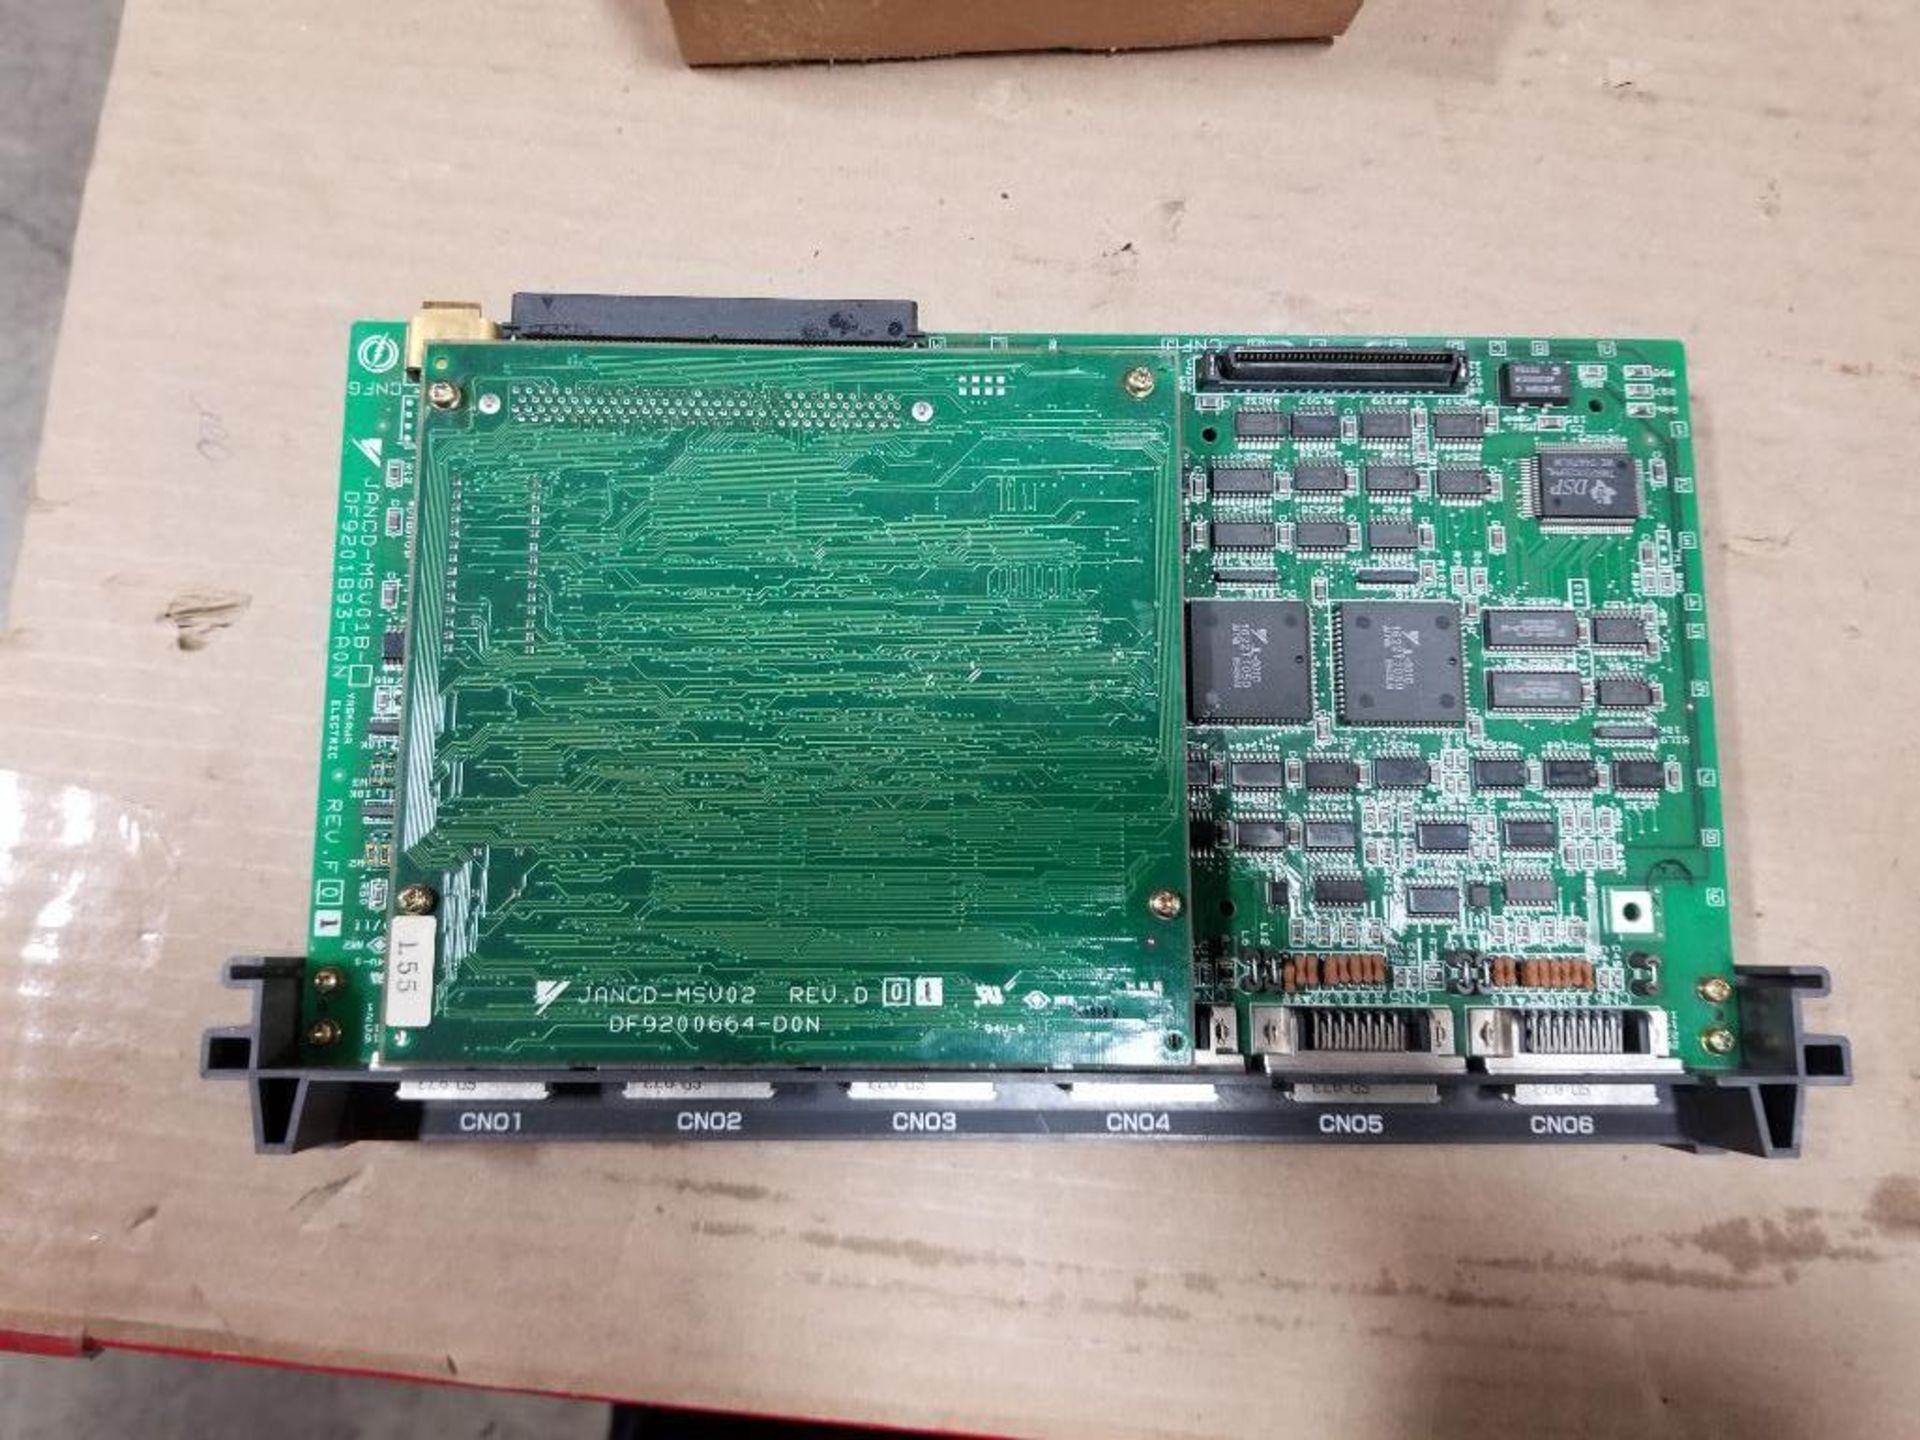 Qty 2 - Yaskawa JANCD-MSV01B CNC PC board. MSV018. - Image 5 of 10